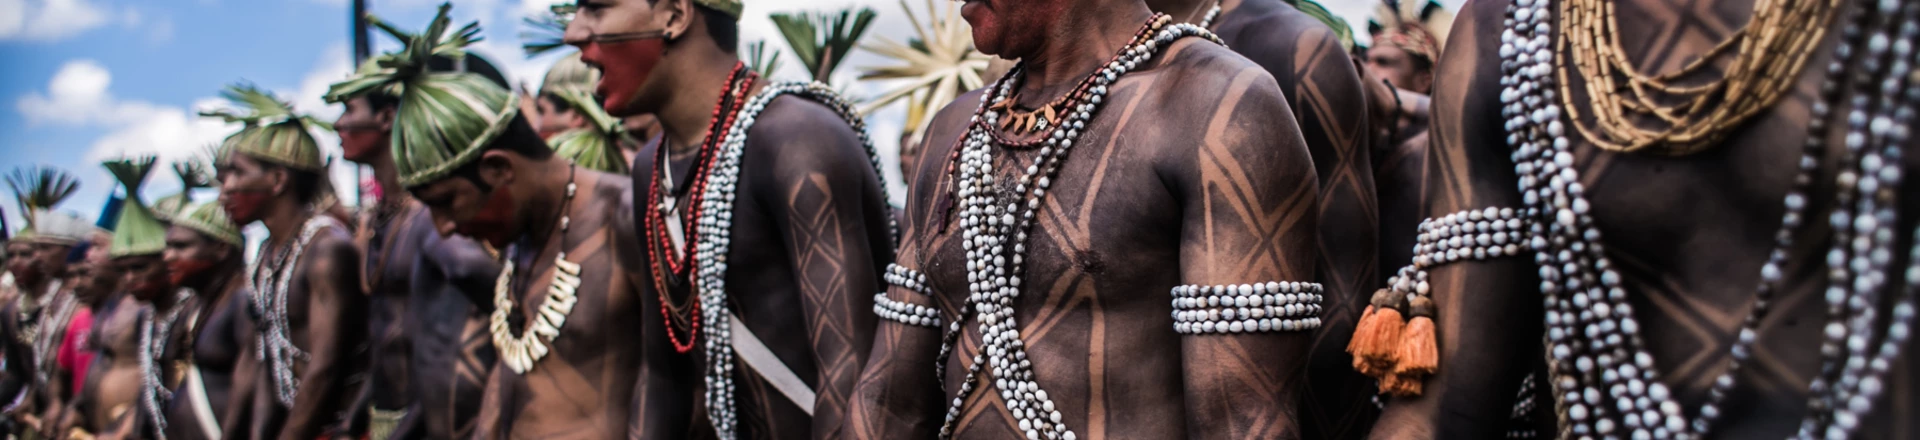 Representantes da aldeia Xukuru durante a Mobilização Nacional Indígena 2015